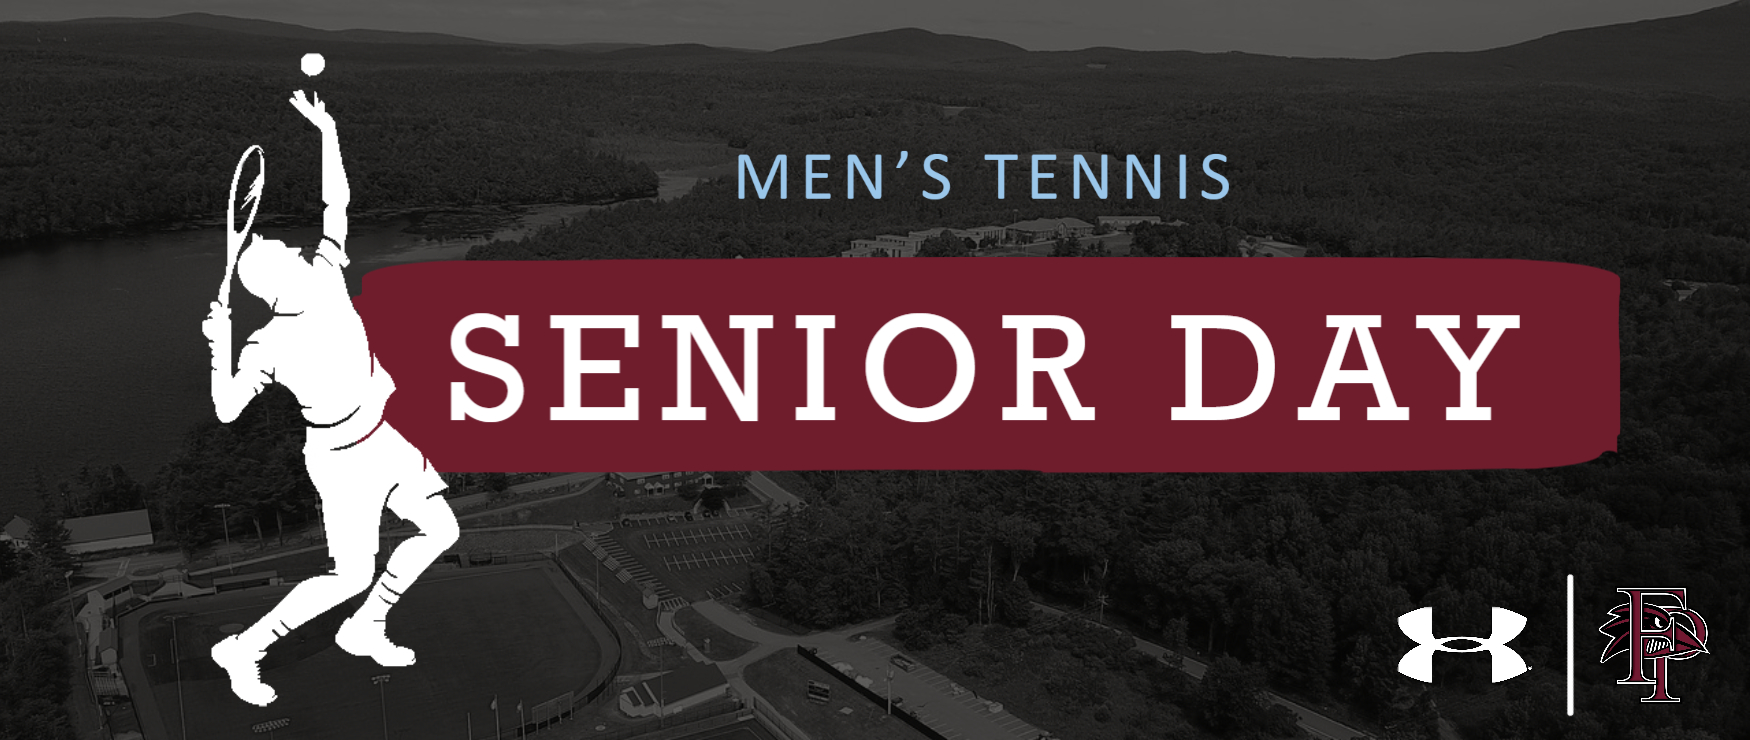 Men's tennis Senior Day.